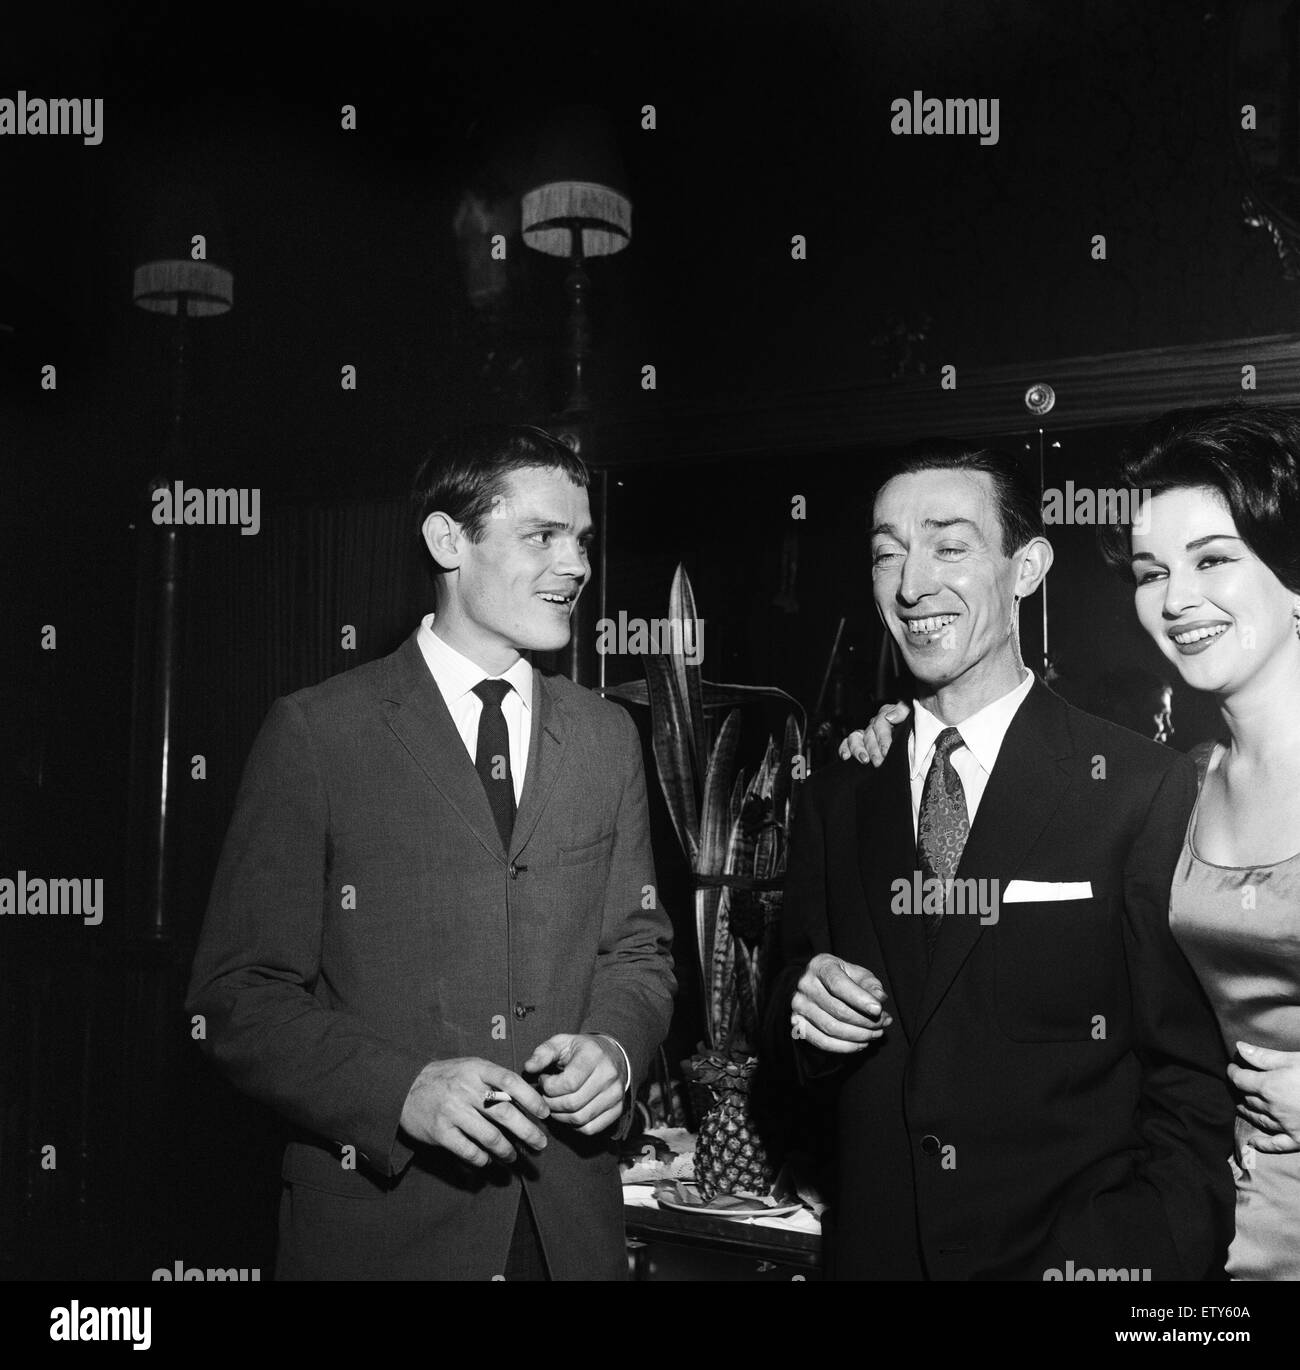 Foto de la izquierda es de Chet Baker, el trompetista de jazz estadounidense. Roma, Italia, 27 de marzo de 1960. Foto de stock